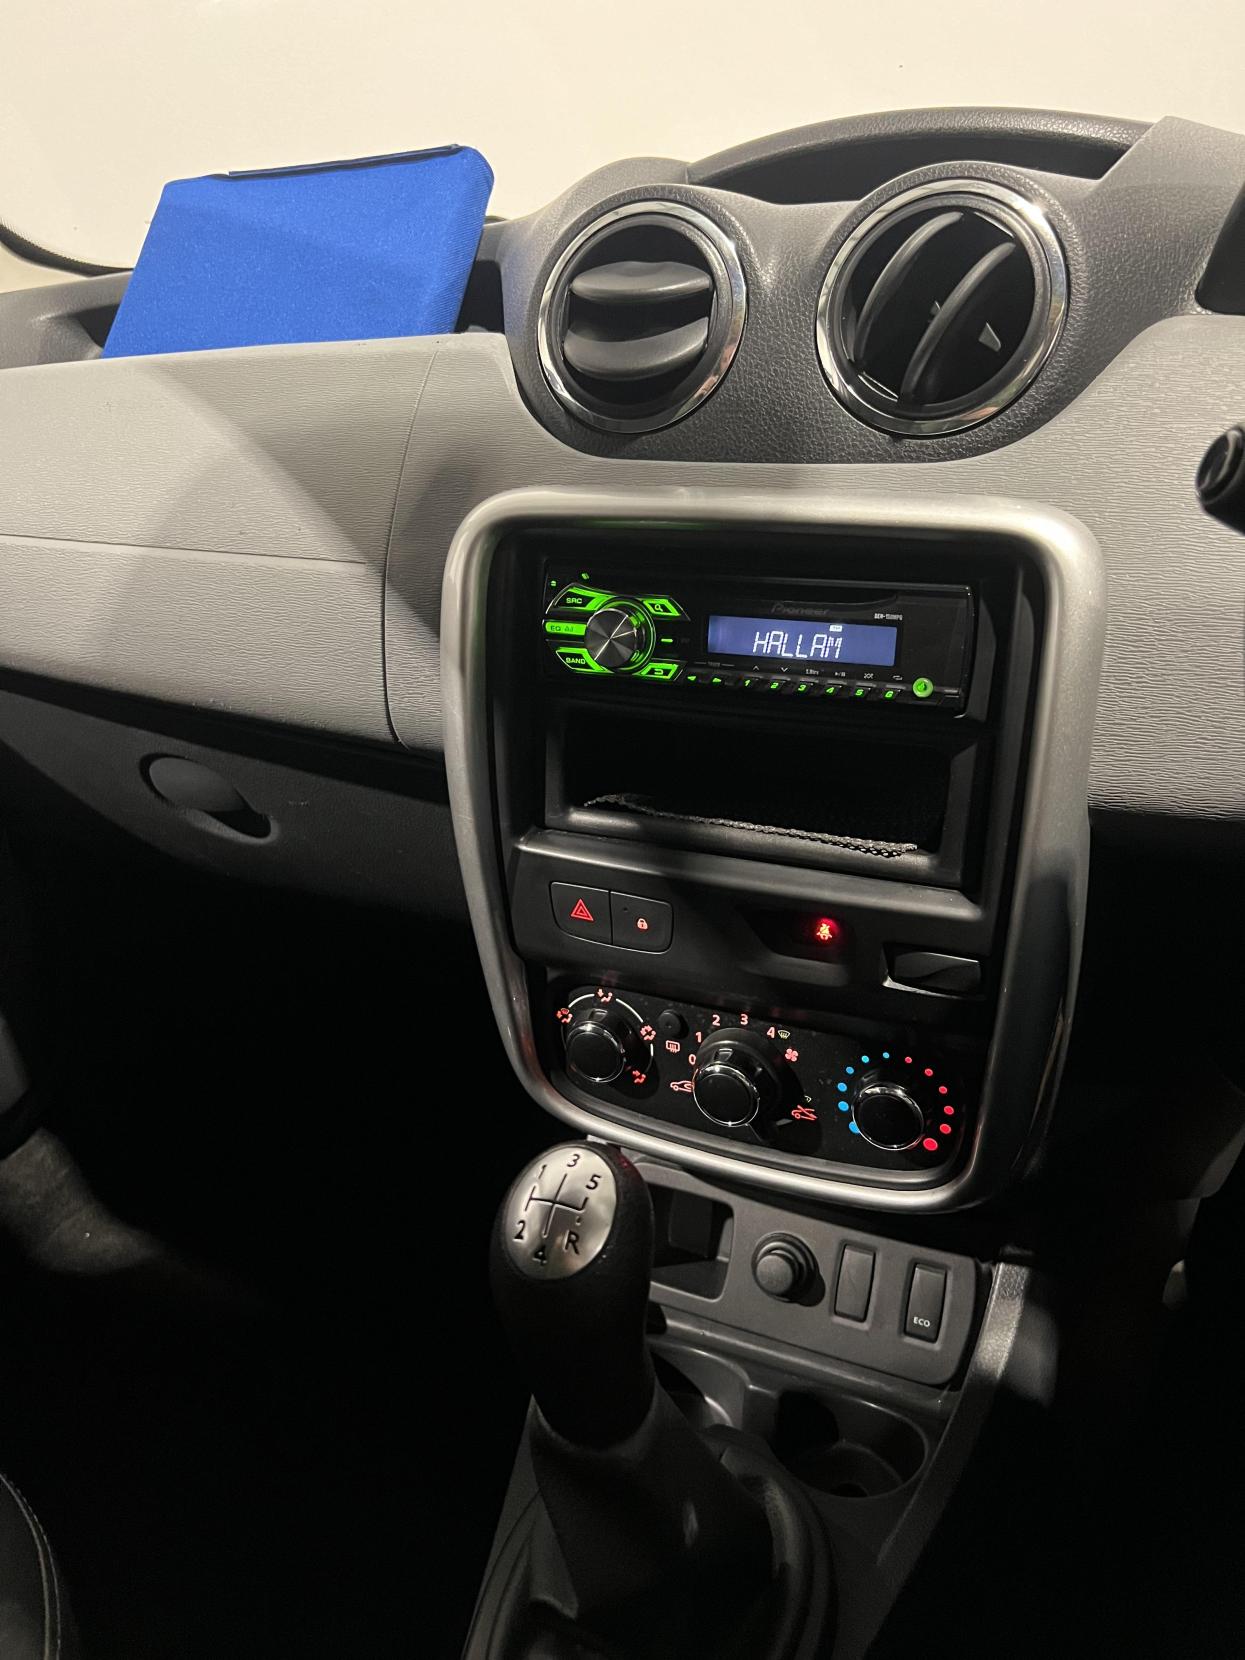 Dacia Duster 1.6 Access SUV 5dr Petrol Manual Euro 5 (105 ps)